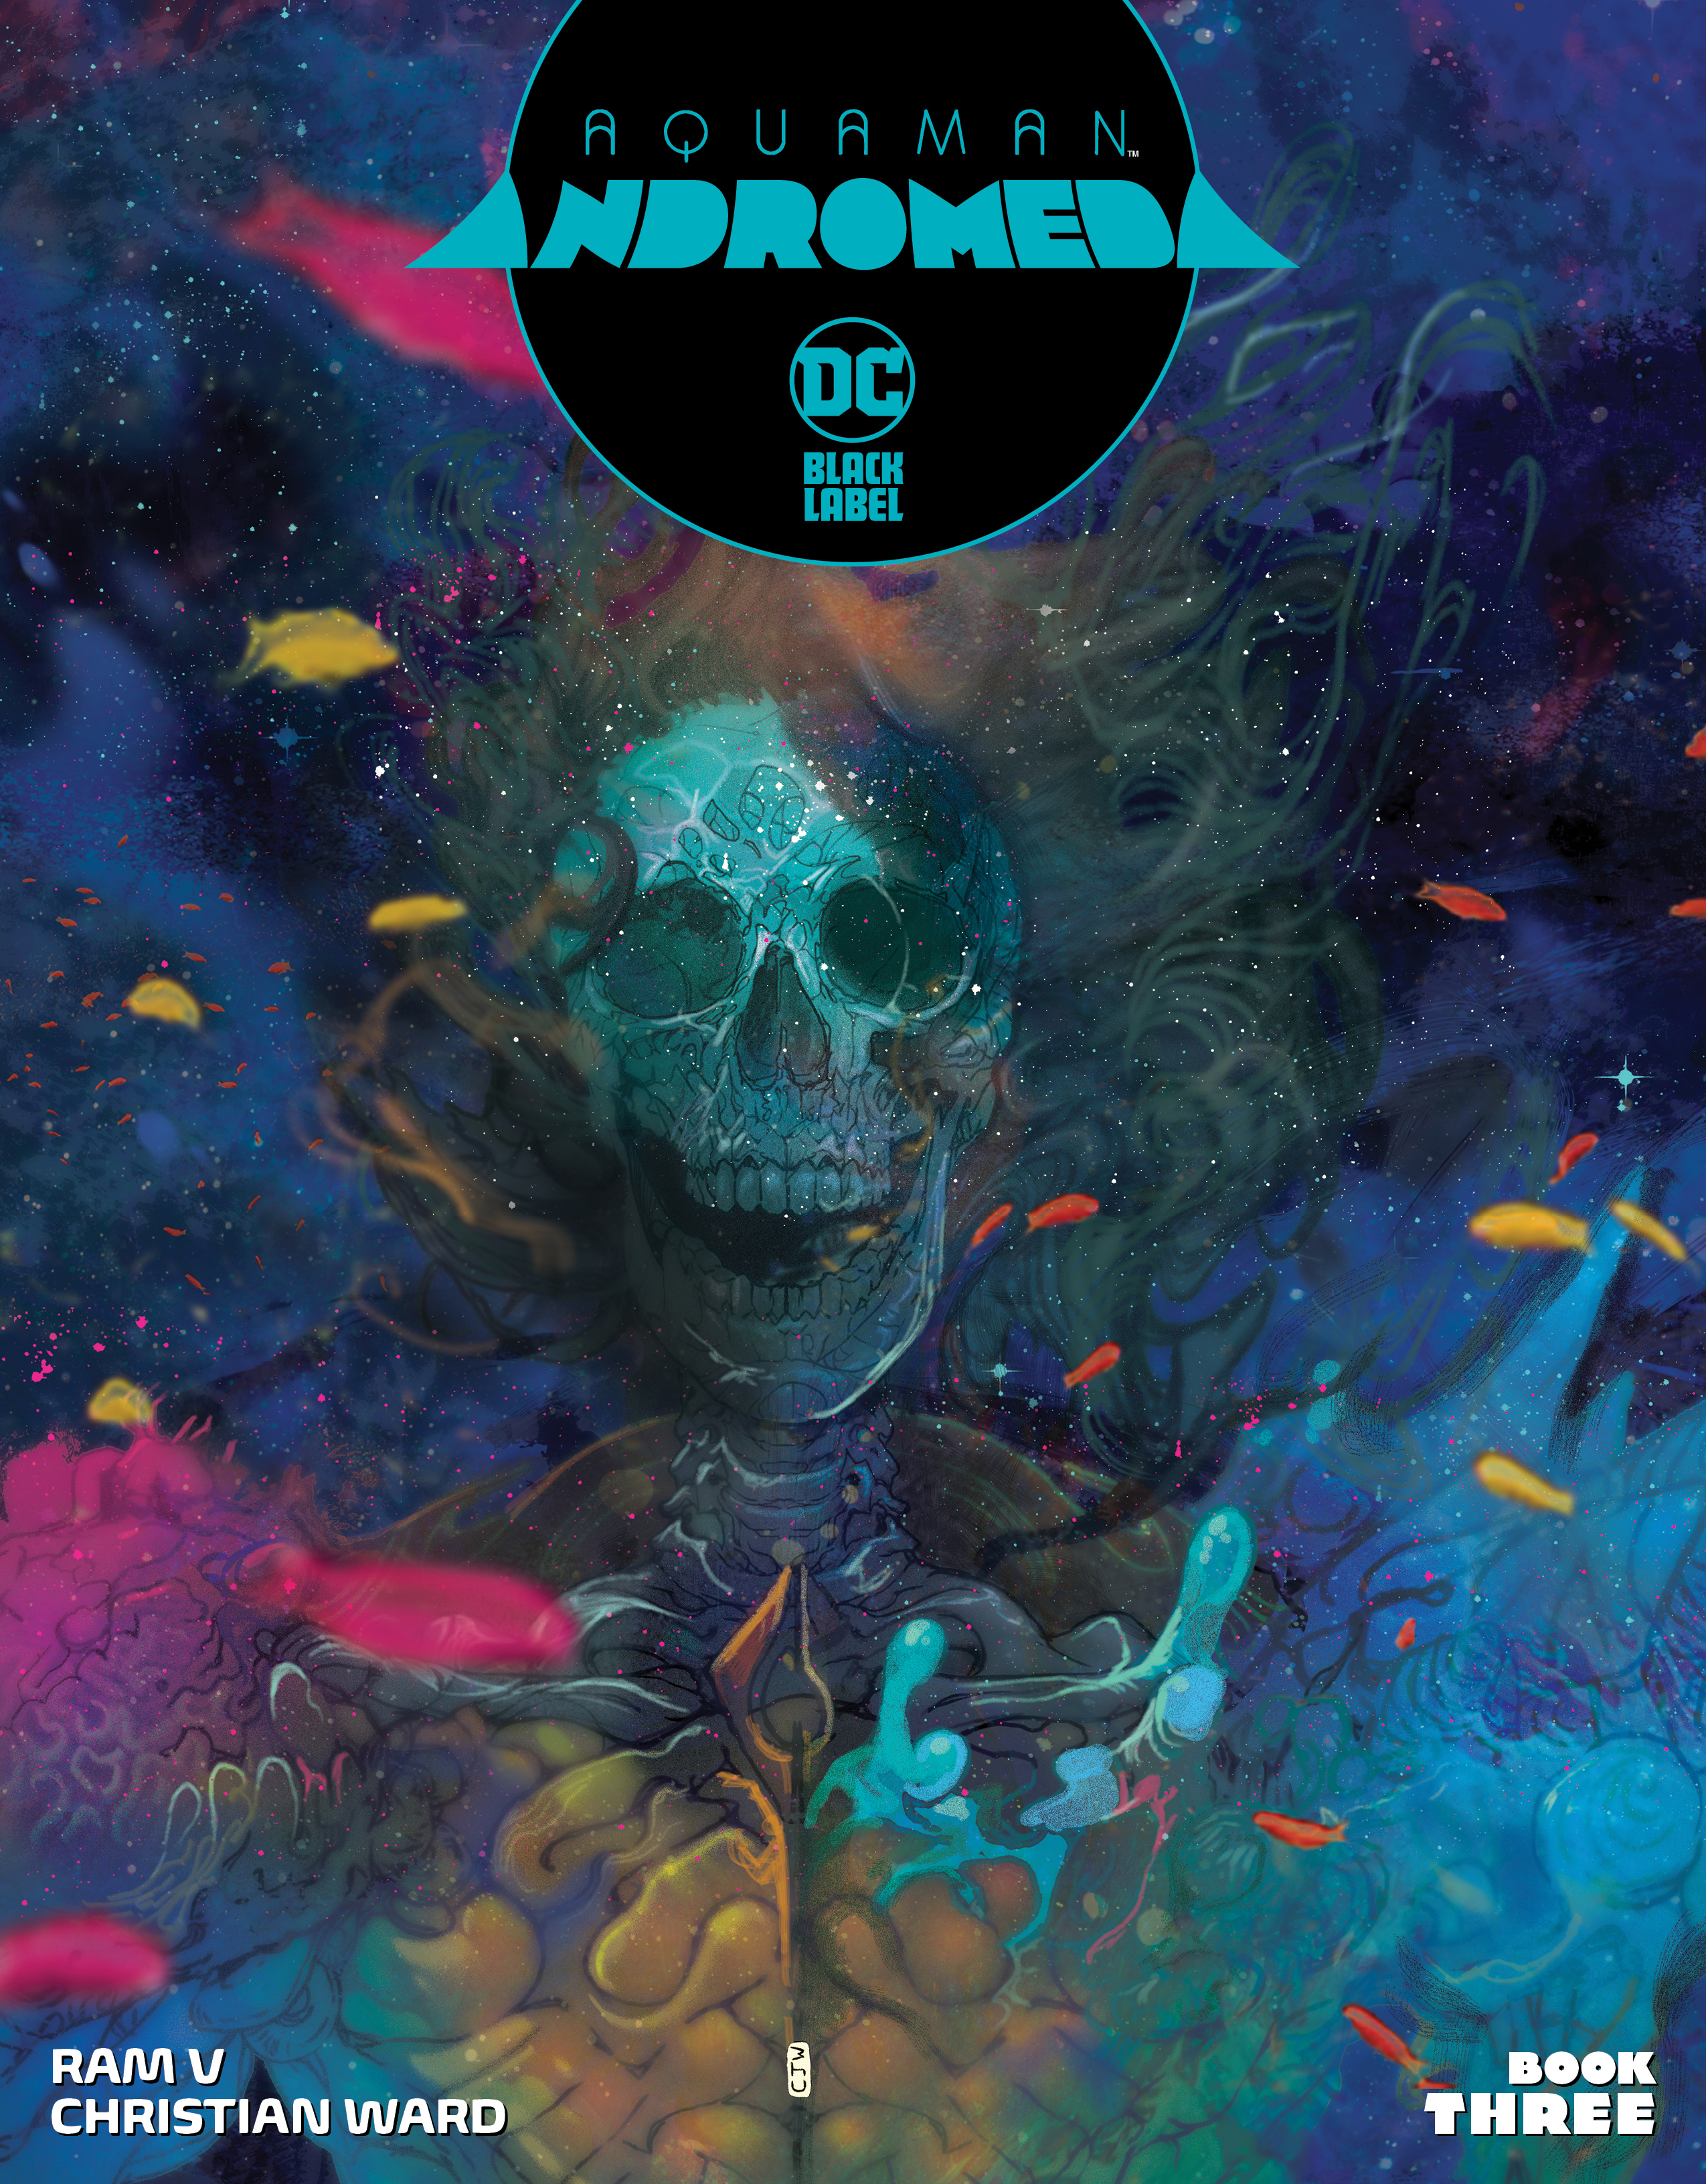 Aquaman Andromeda #3 Cover A Christian Ward (Mature) (Of 3)